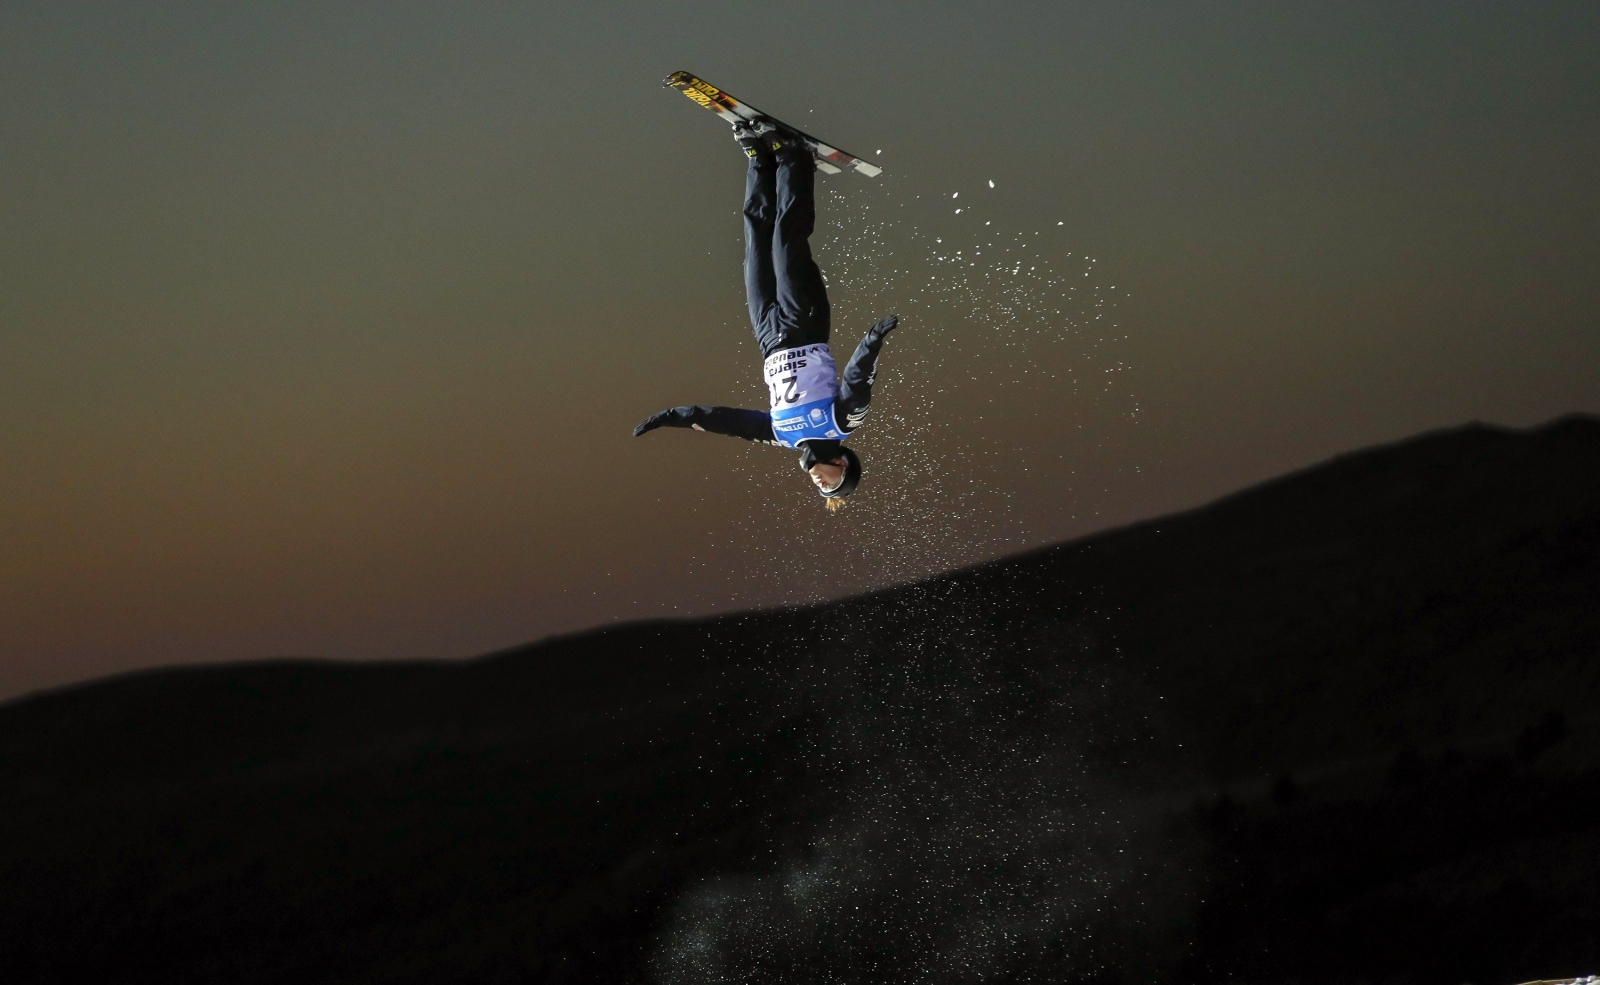 Amerykańska narciarka Madison Olsen skacze w czasie Mistrzostw Świata w jeździe dowolnej w Grenadzie, Hiszpania.